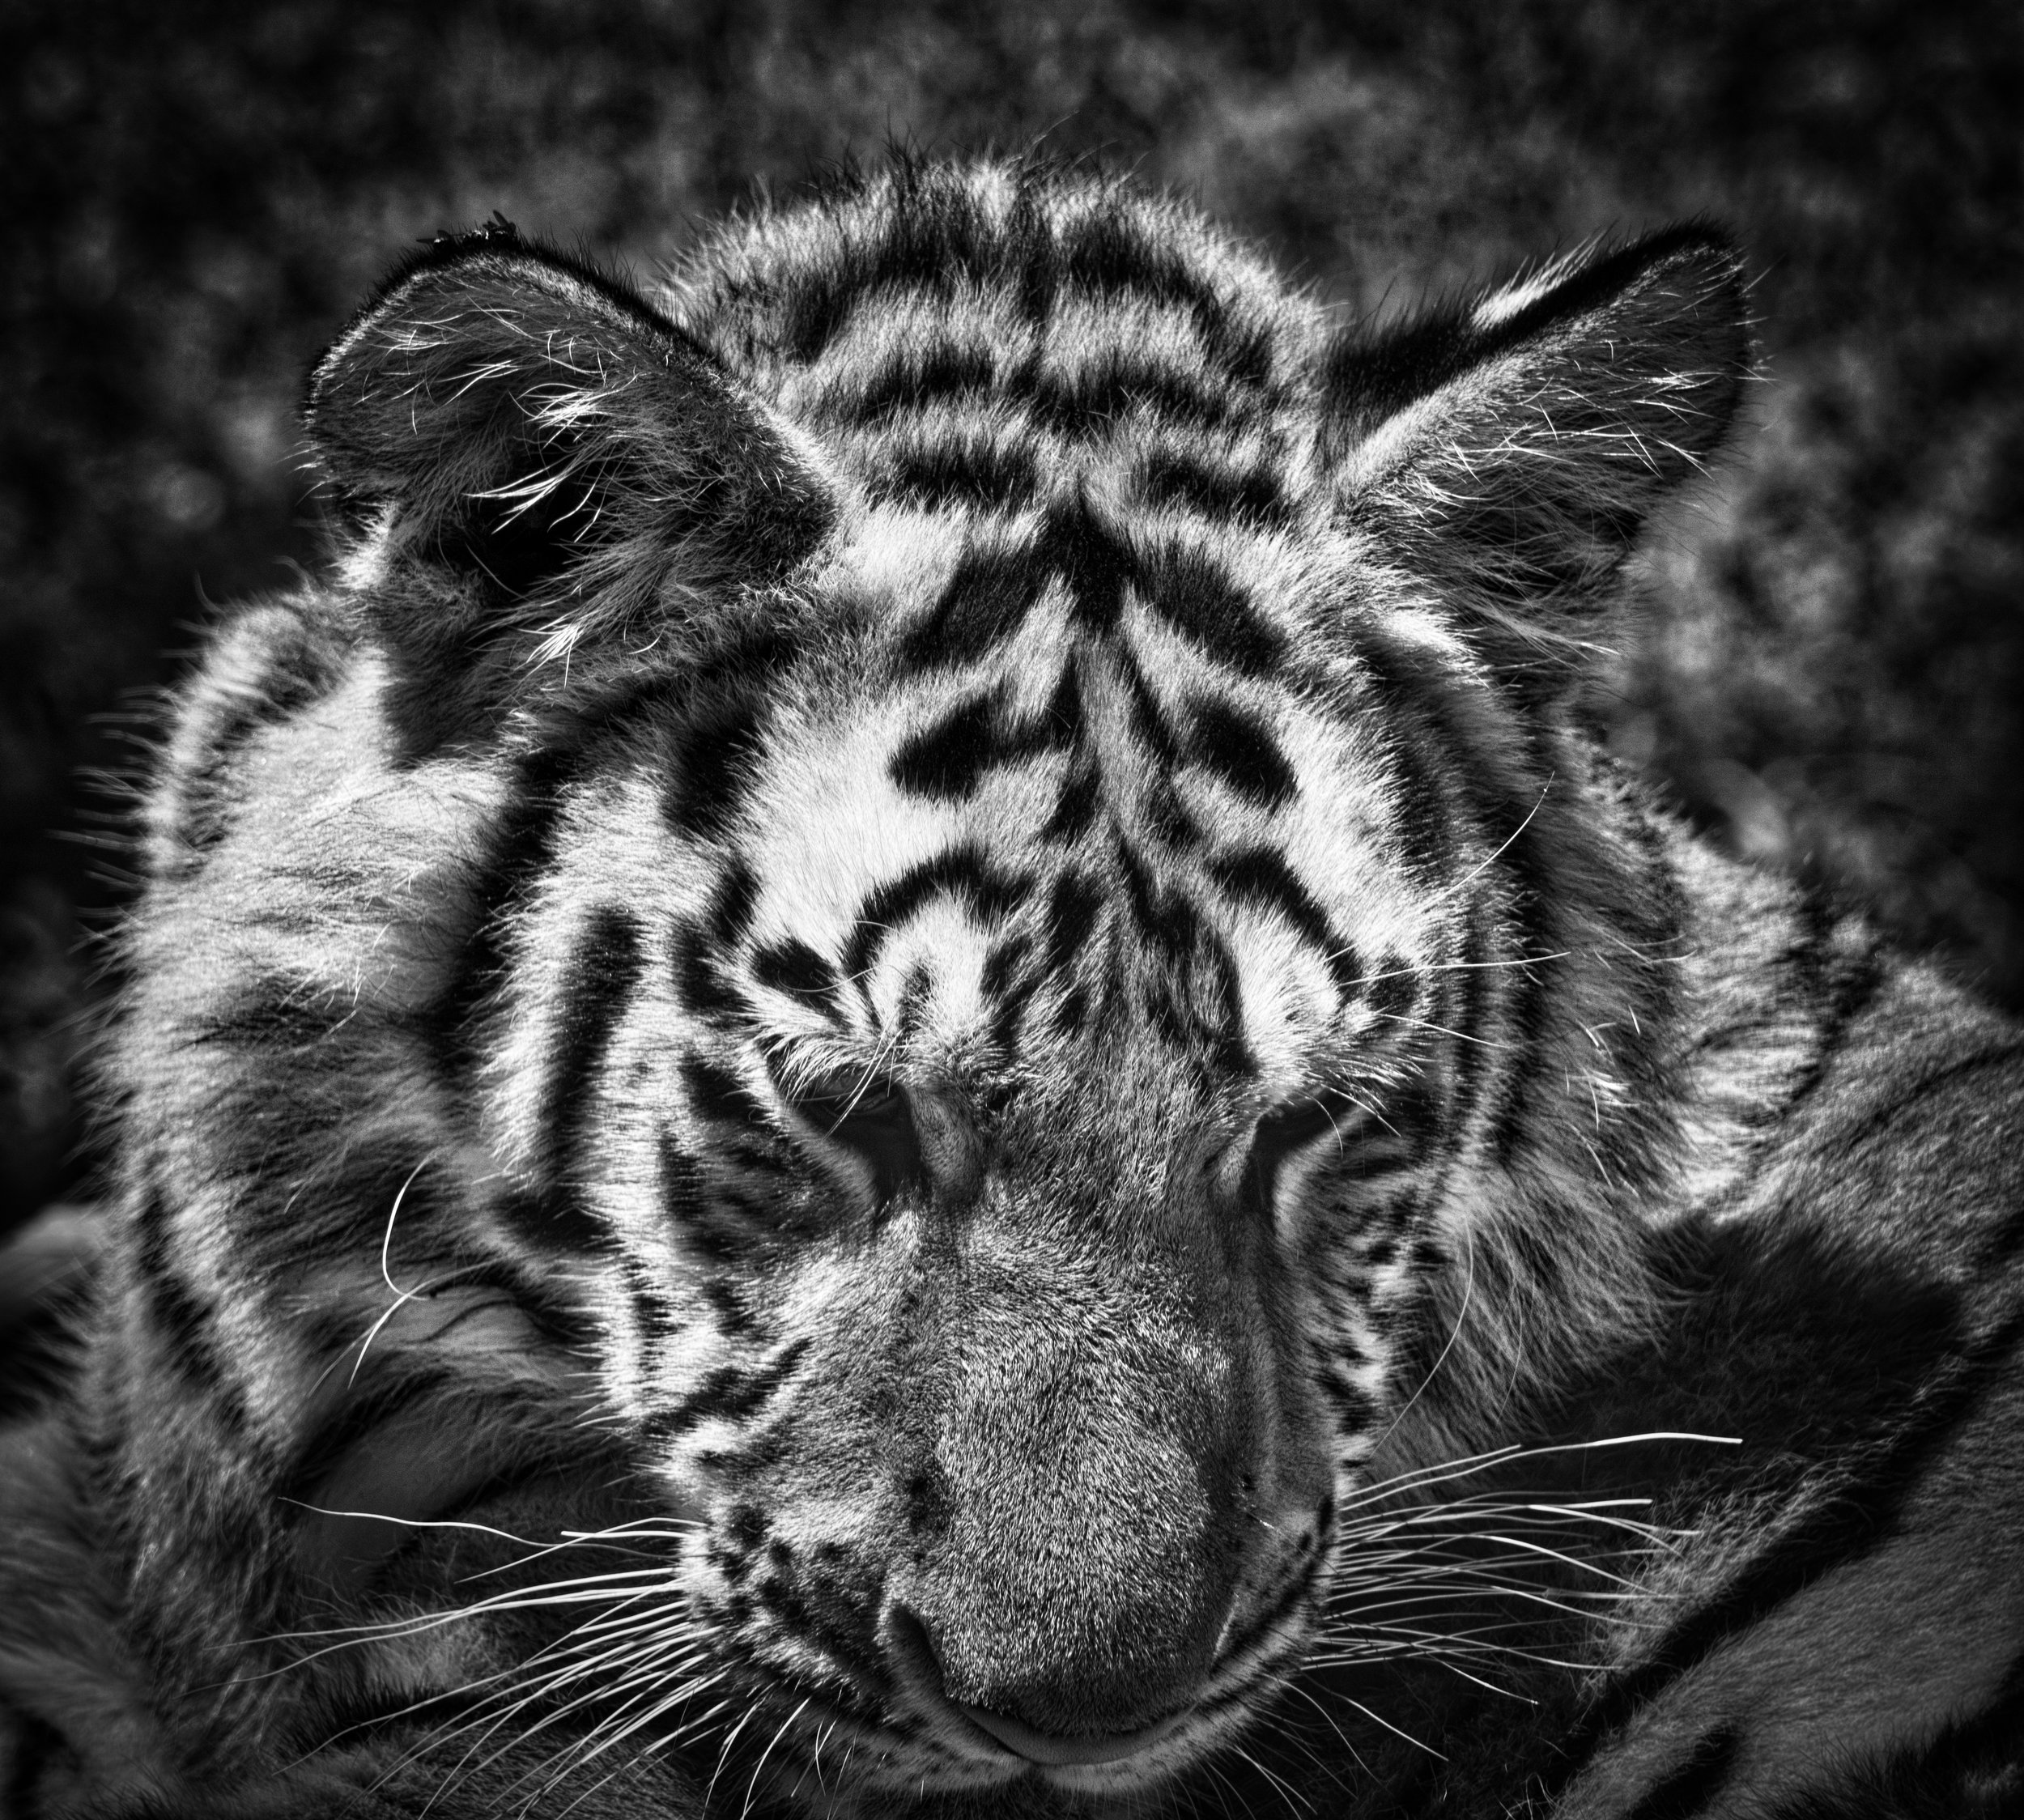   Tiger cub  